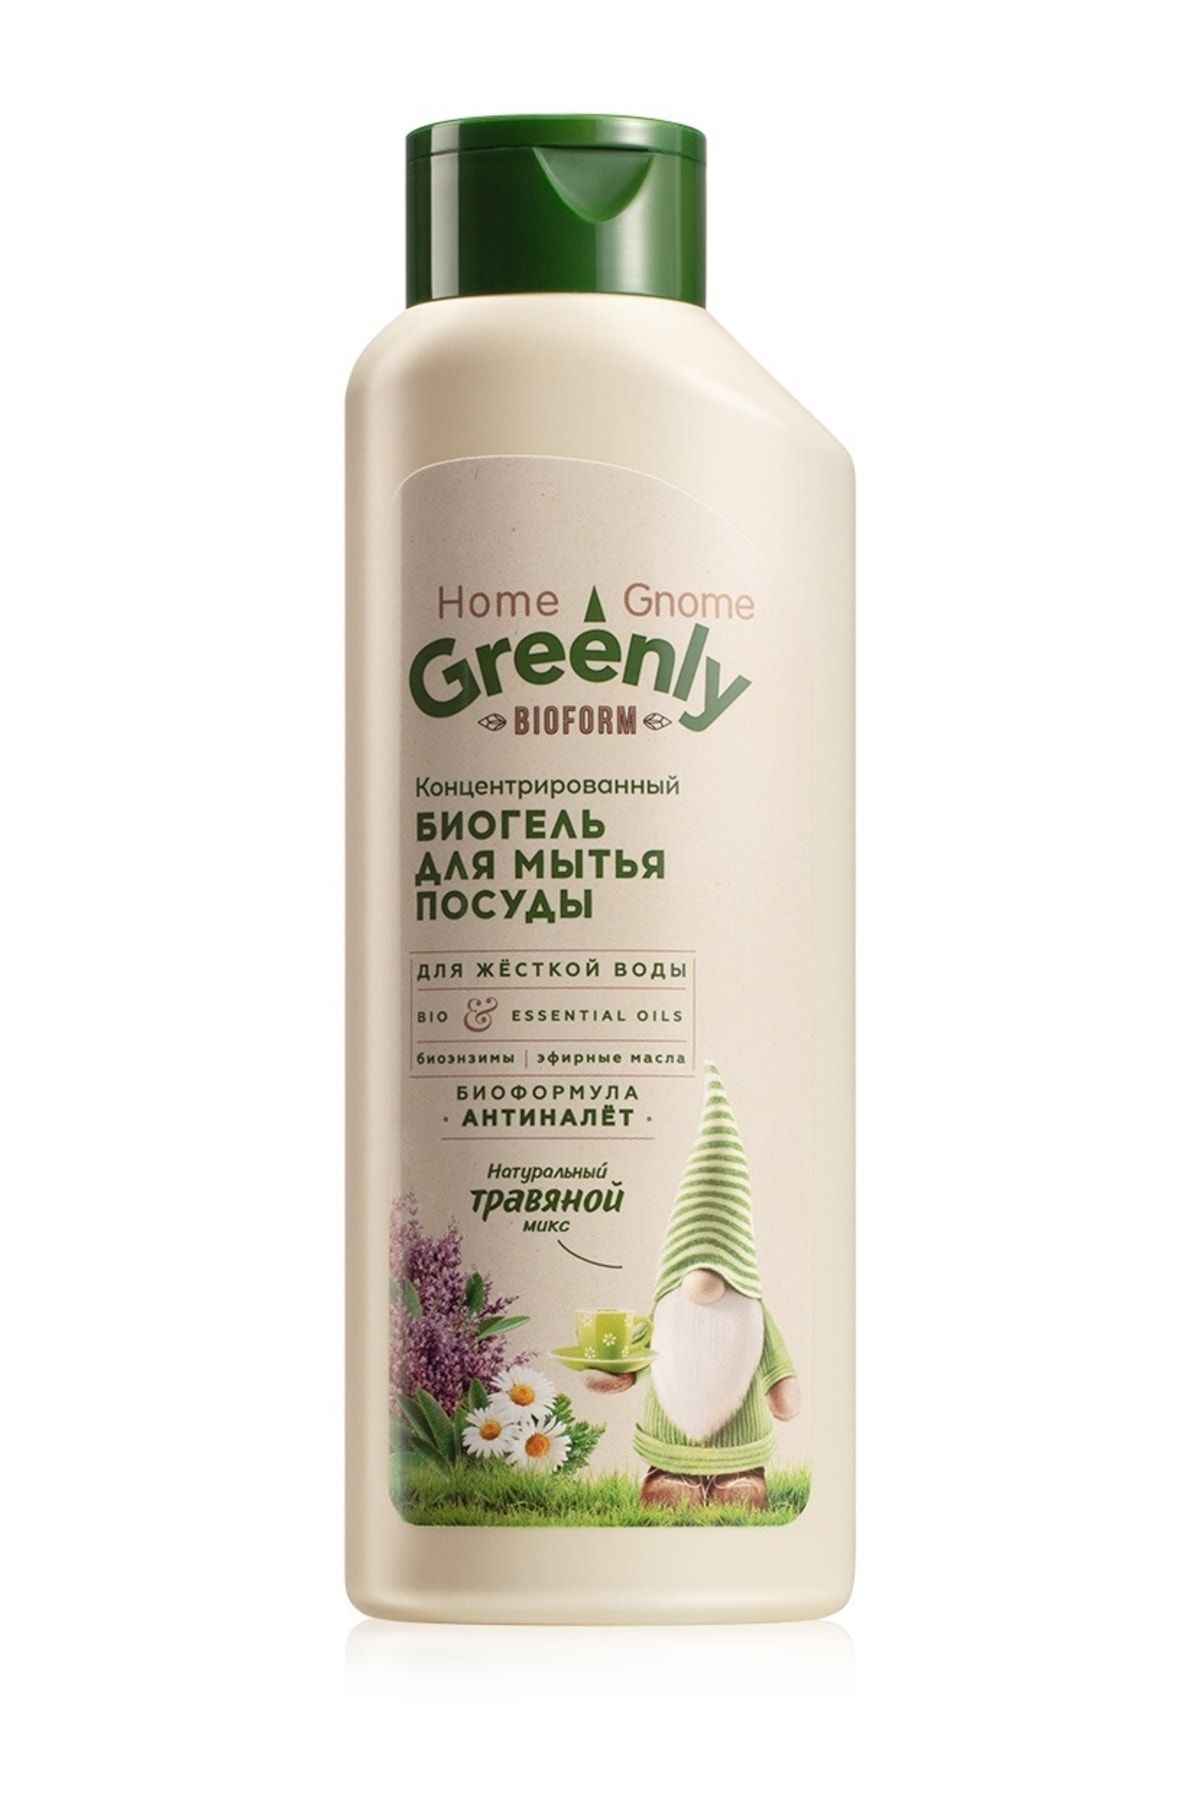 Faberlic Home Gnome Greenly Serisi Konsantre Bio Bulaşık Jeli "bitkilerin Karışımı" 500 ml